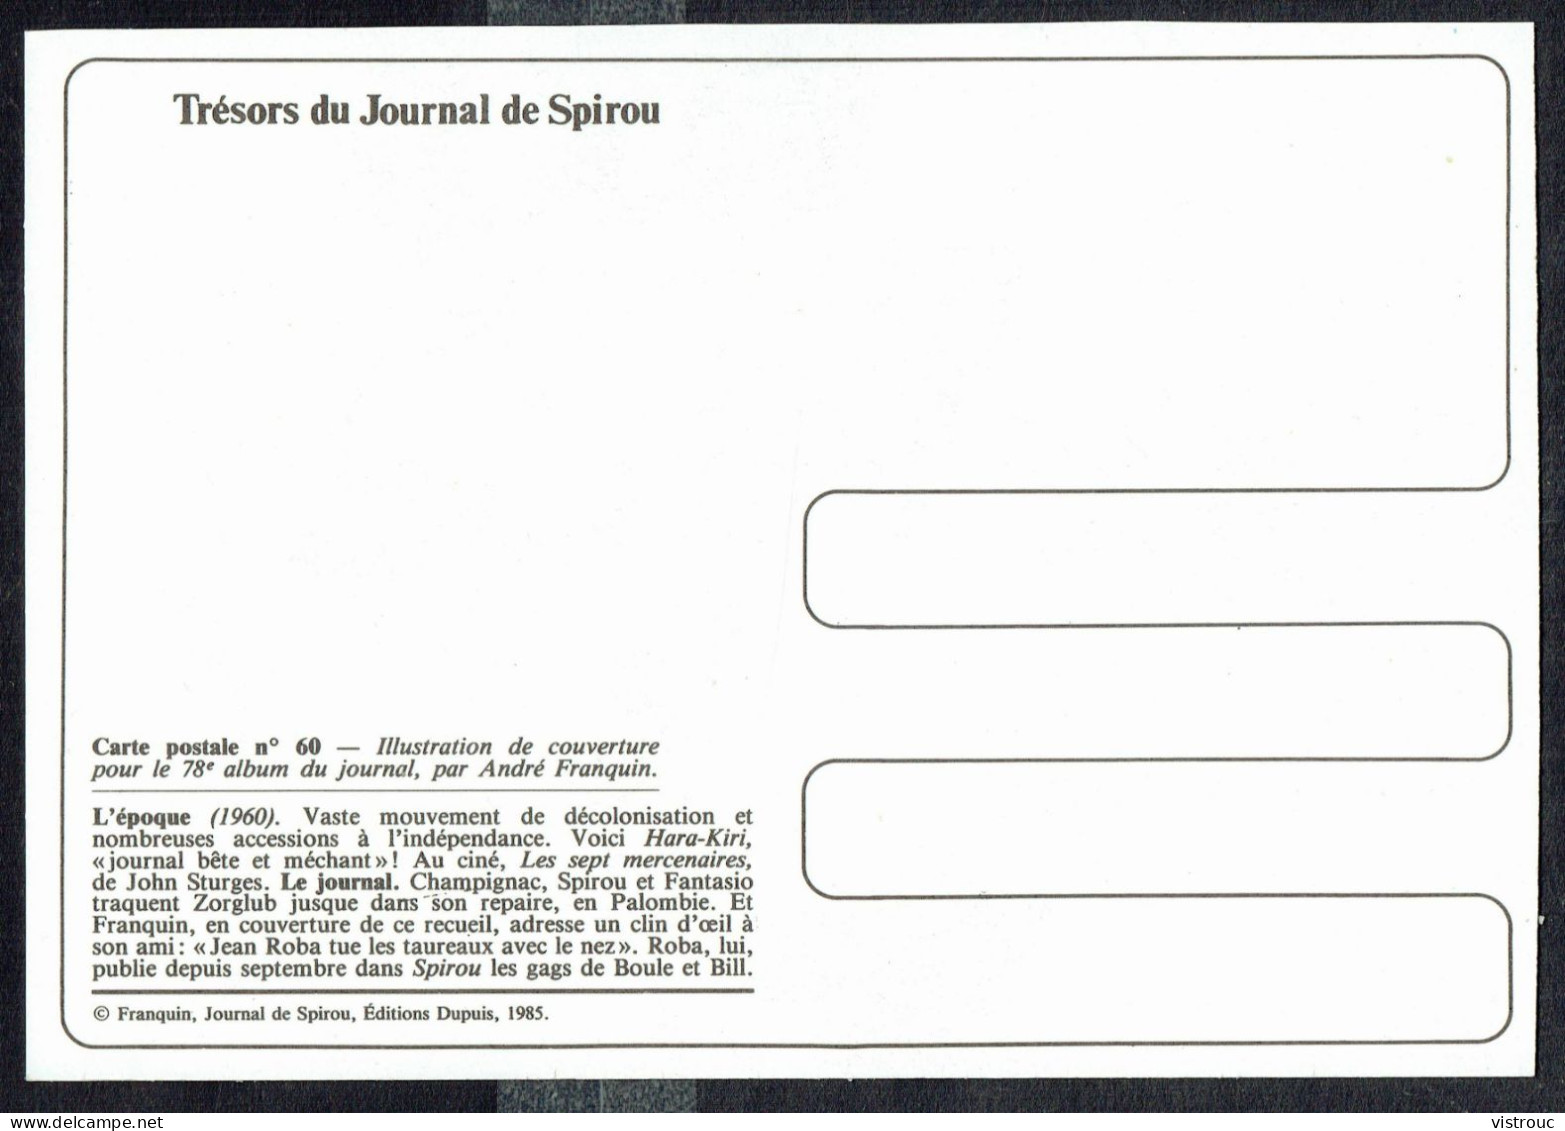 SPIROU - CP N° 60 : Illustration Couverture Album N° 78 De FRANQUIN - Non Circulé - Not Circulated - Ed. DUPUIS - 1985. - Bandes Dessinées